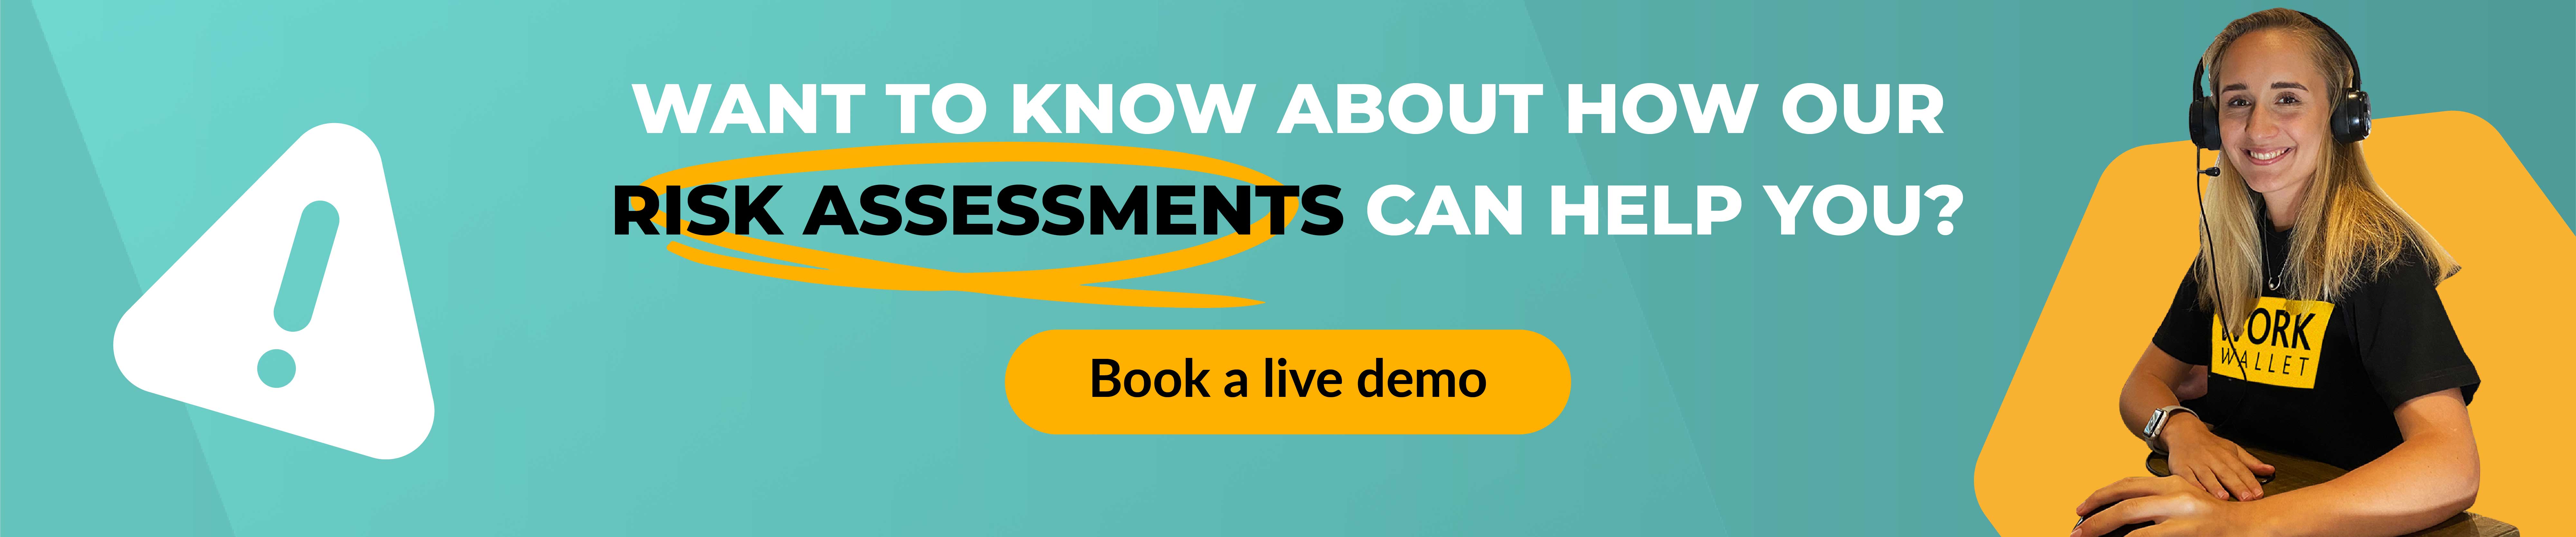 risk assessments demo link banner